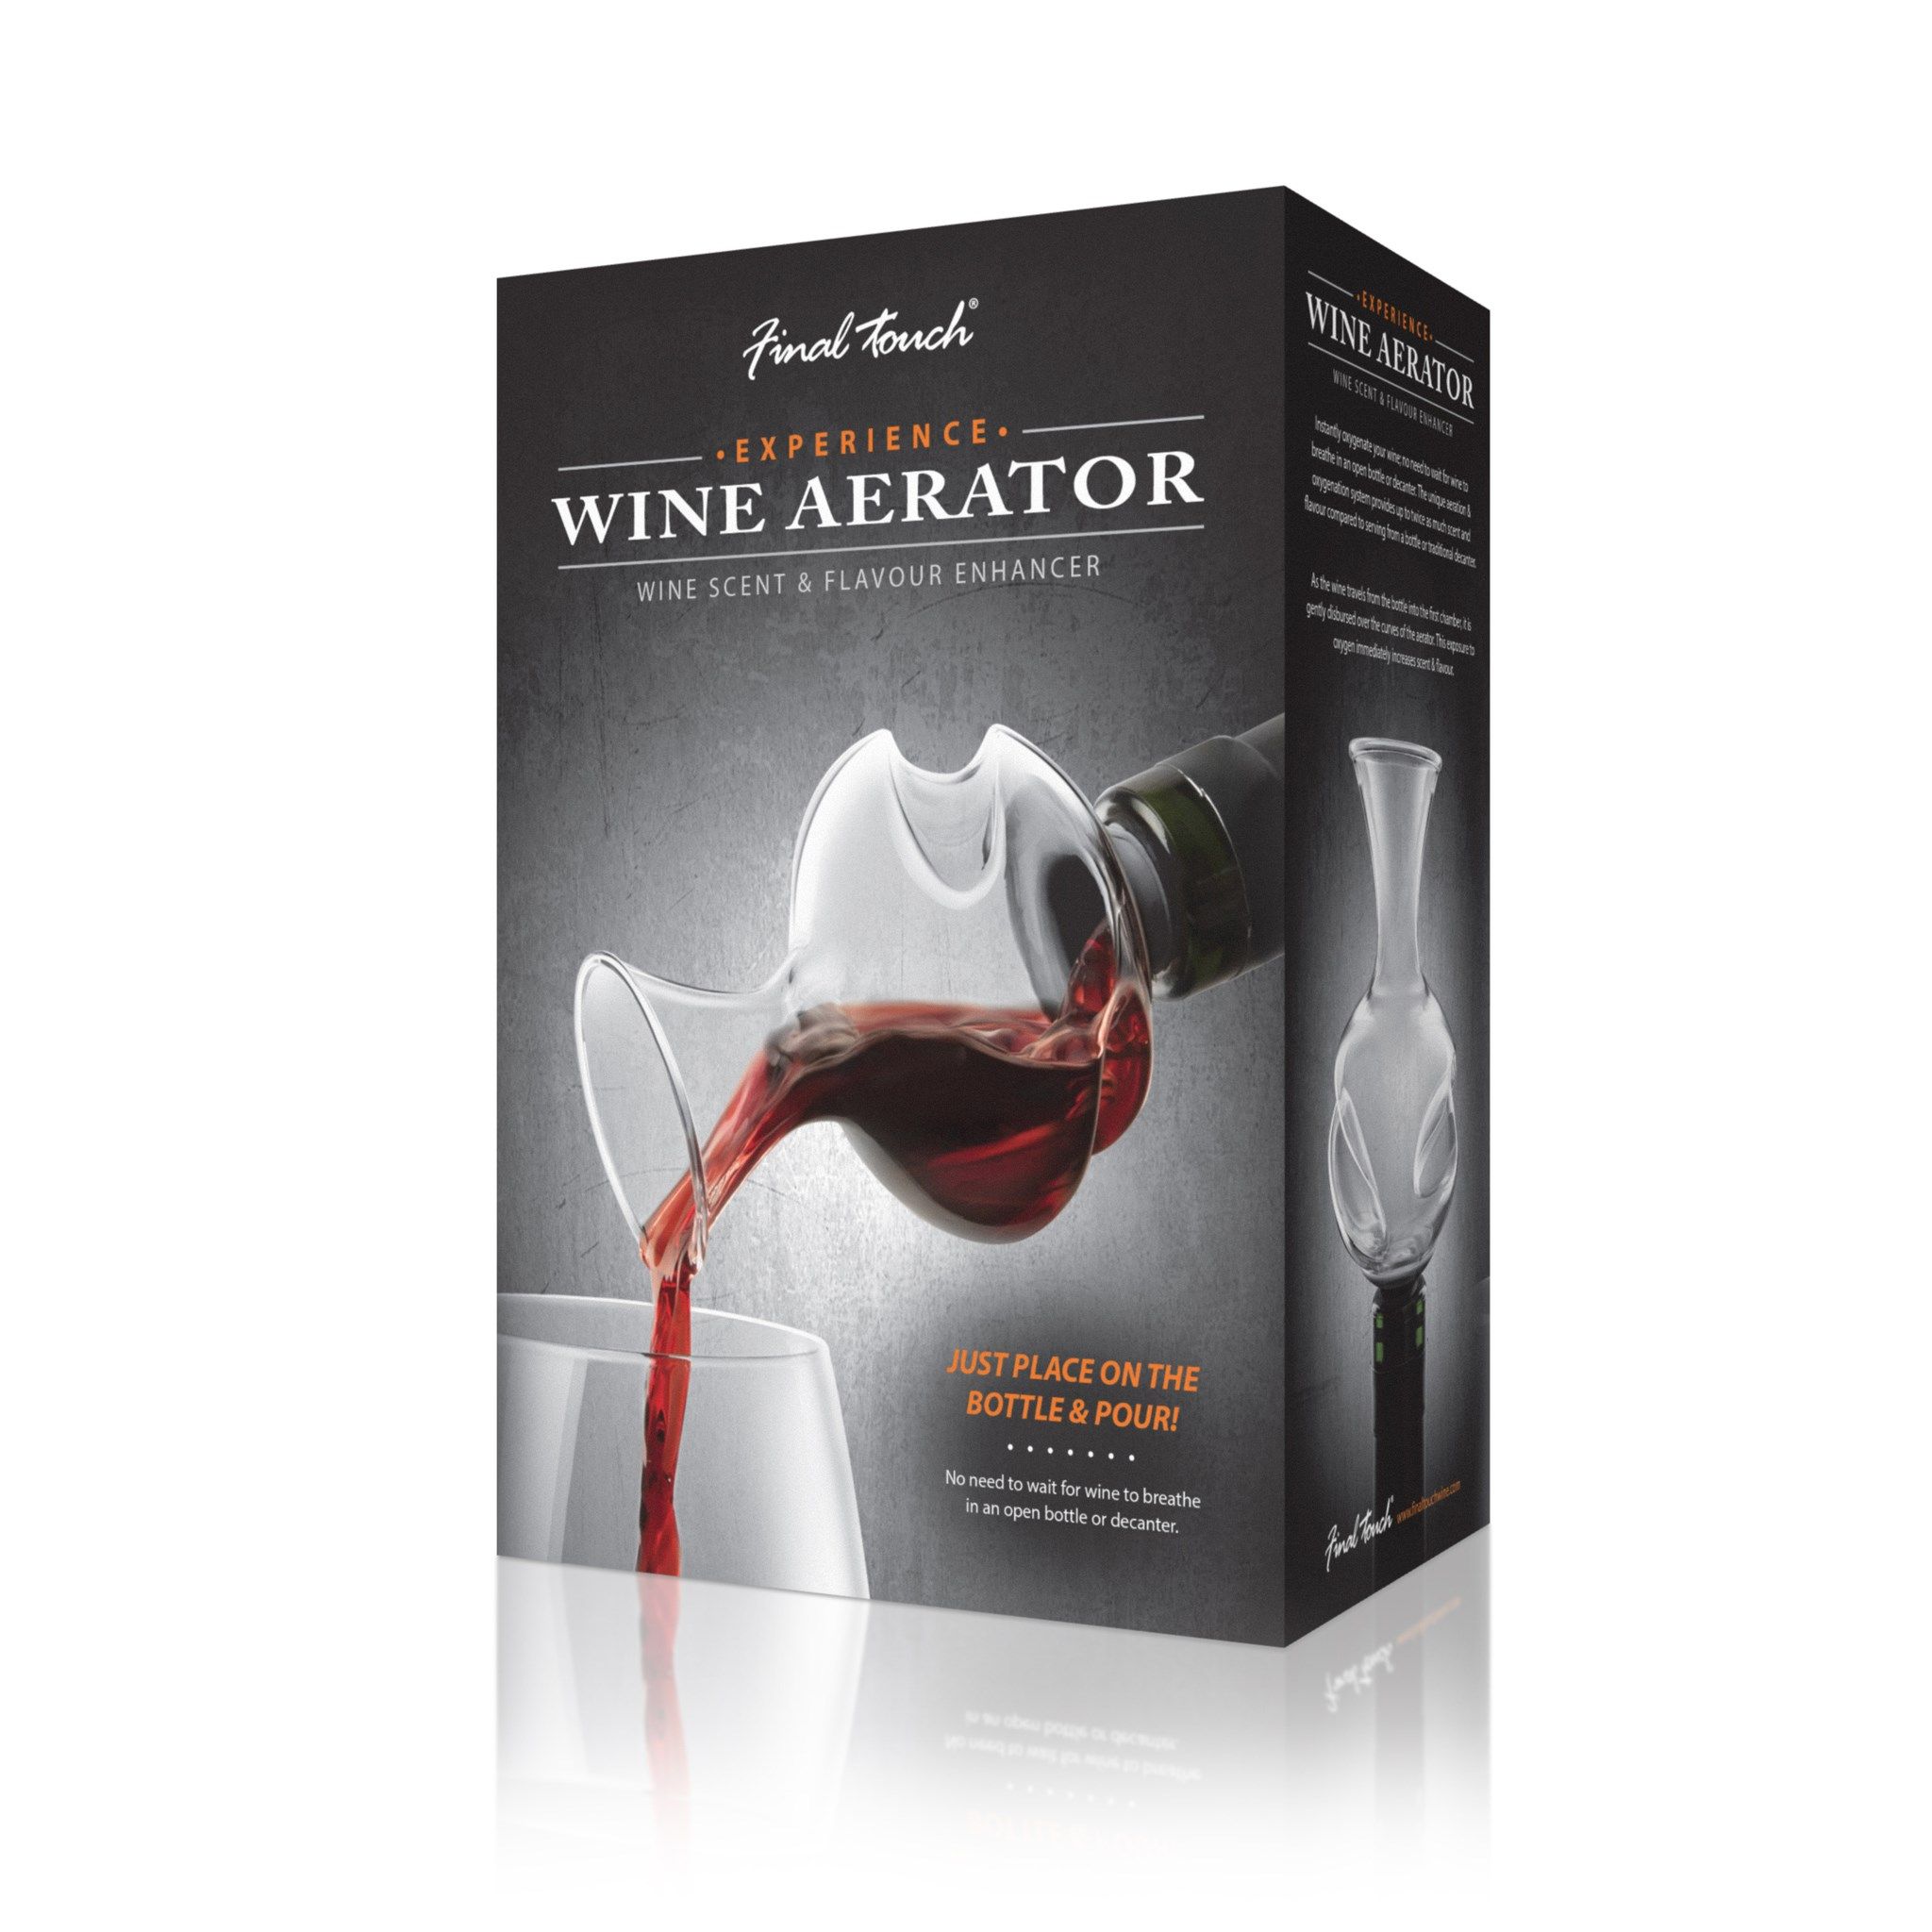 Vinaerator Aérateur pour le Vin à 26,90€ - Achat cadeau accessoire de bar -  Idée cadeau homme